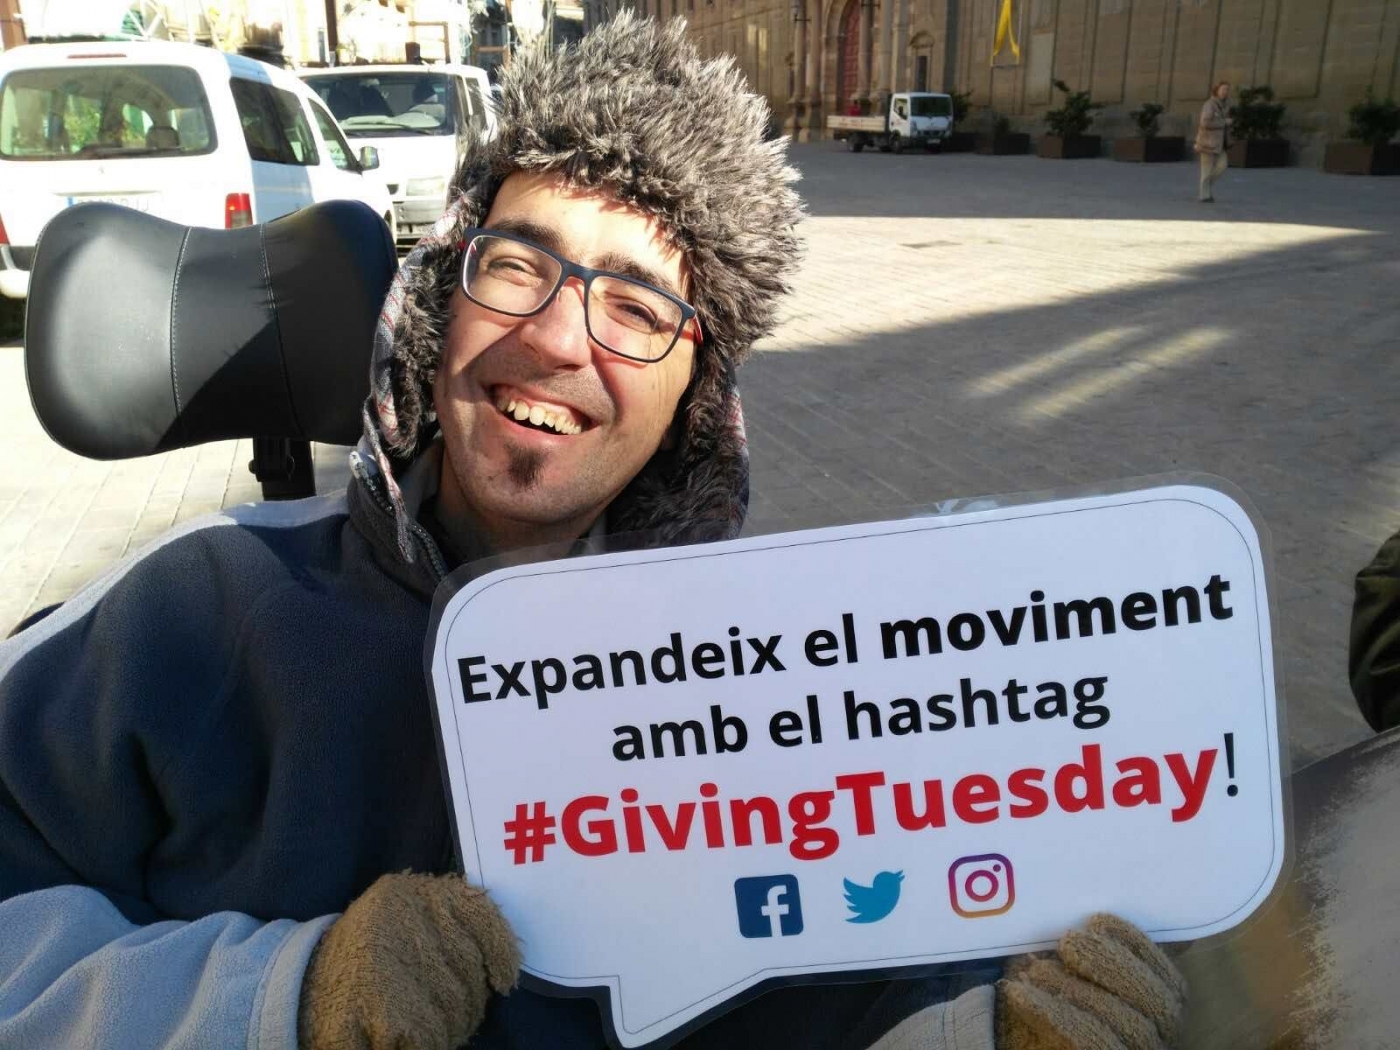 Alba surt al carrer per donar a conèixer la campanya mundial del #GivingTuesday, "Un dia per donar".